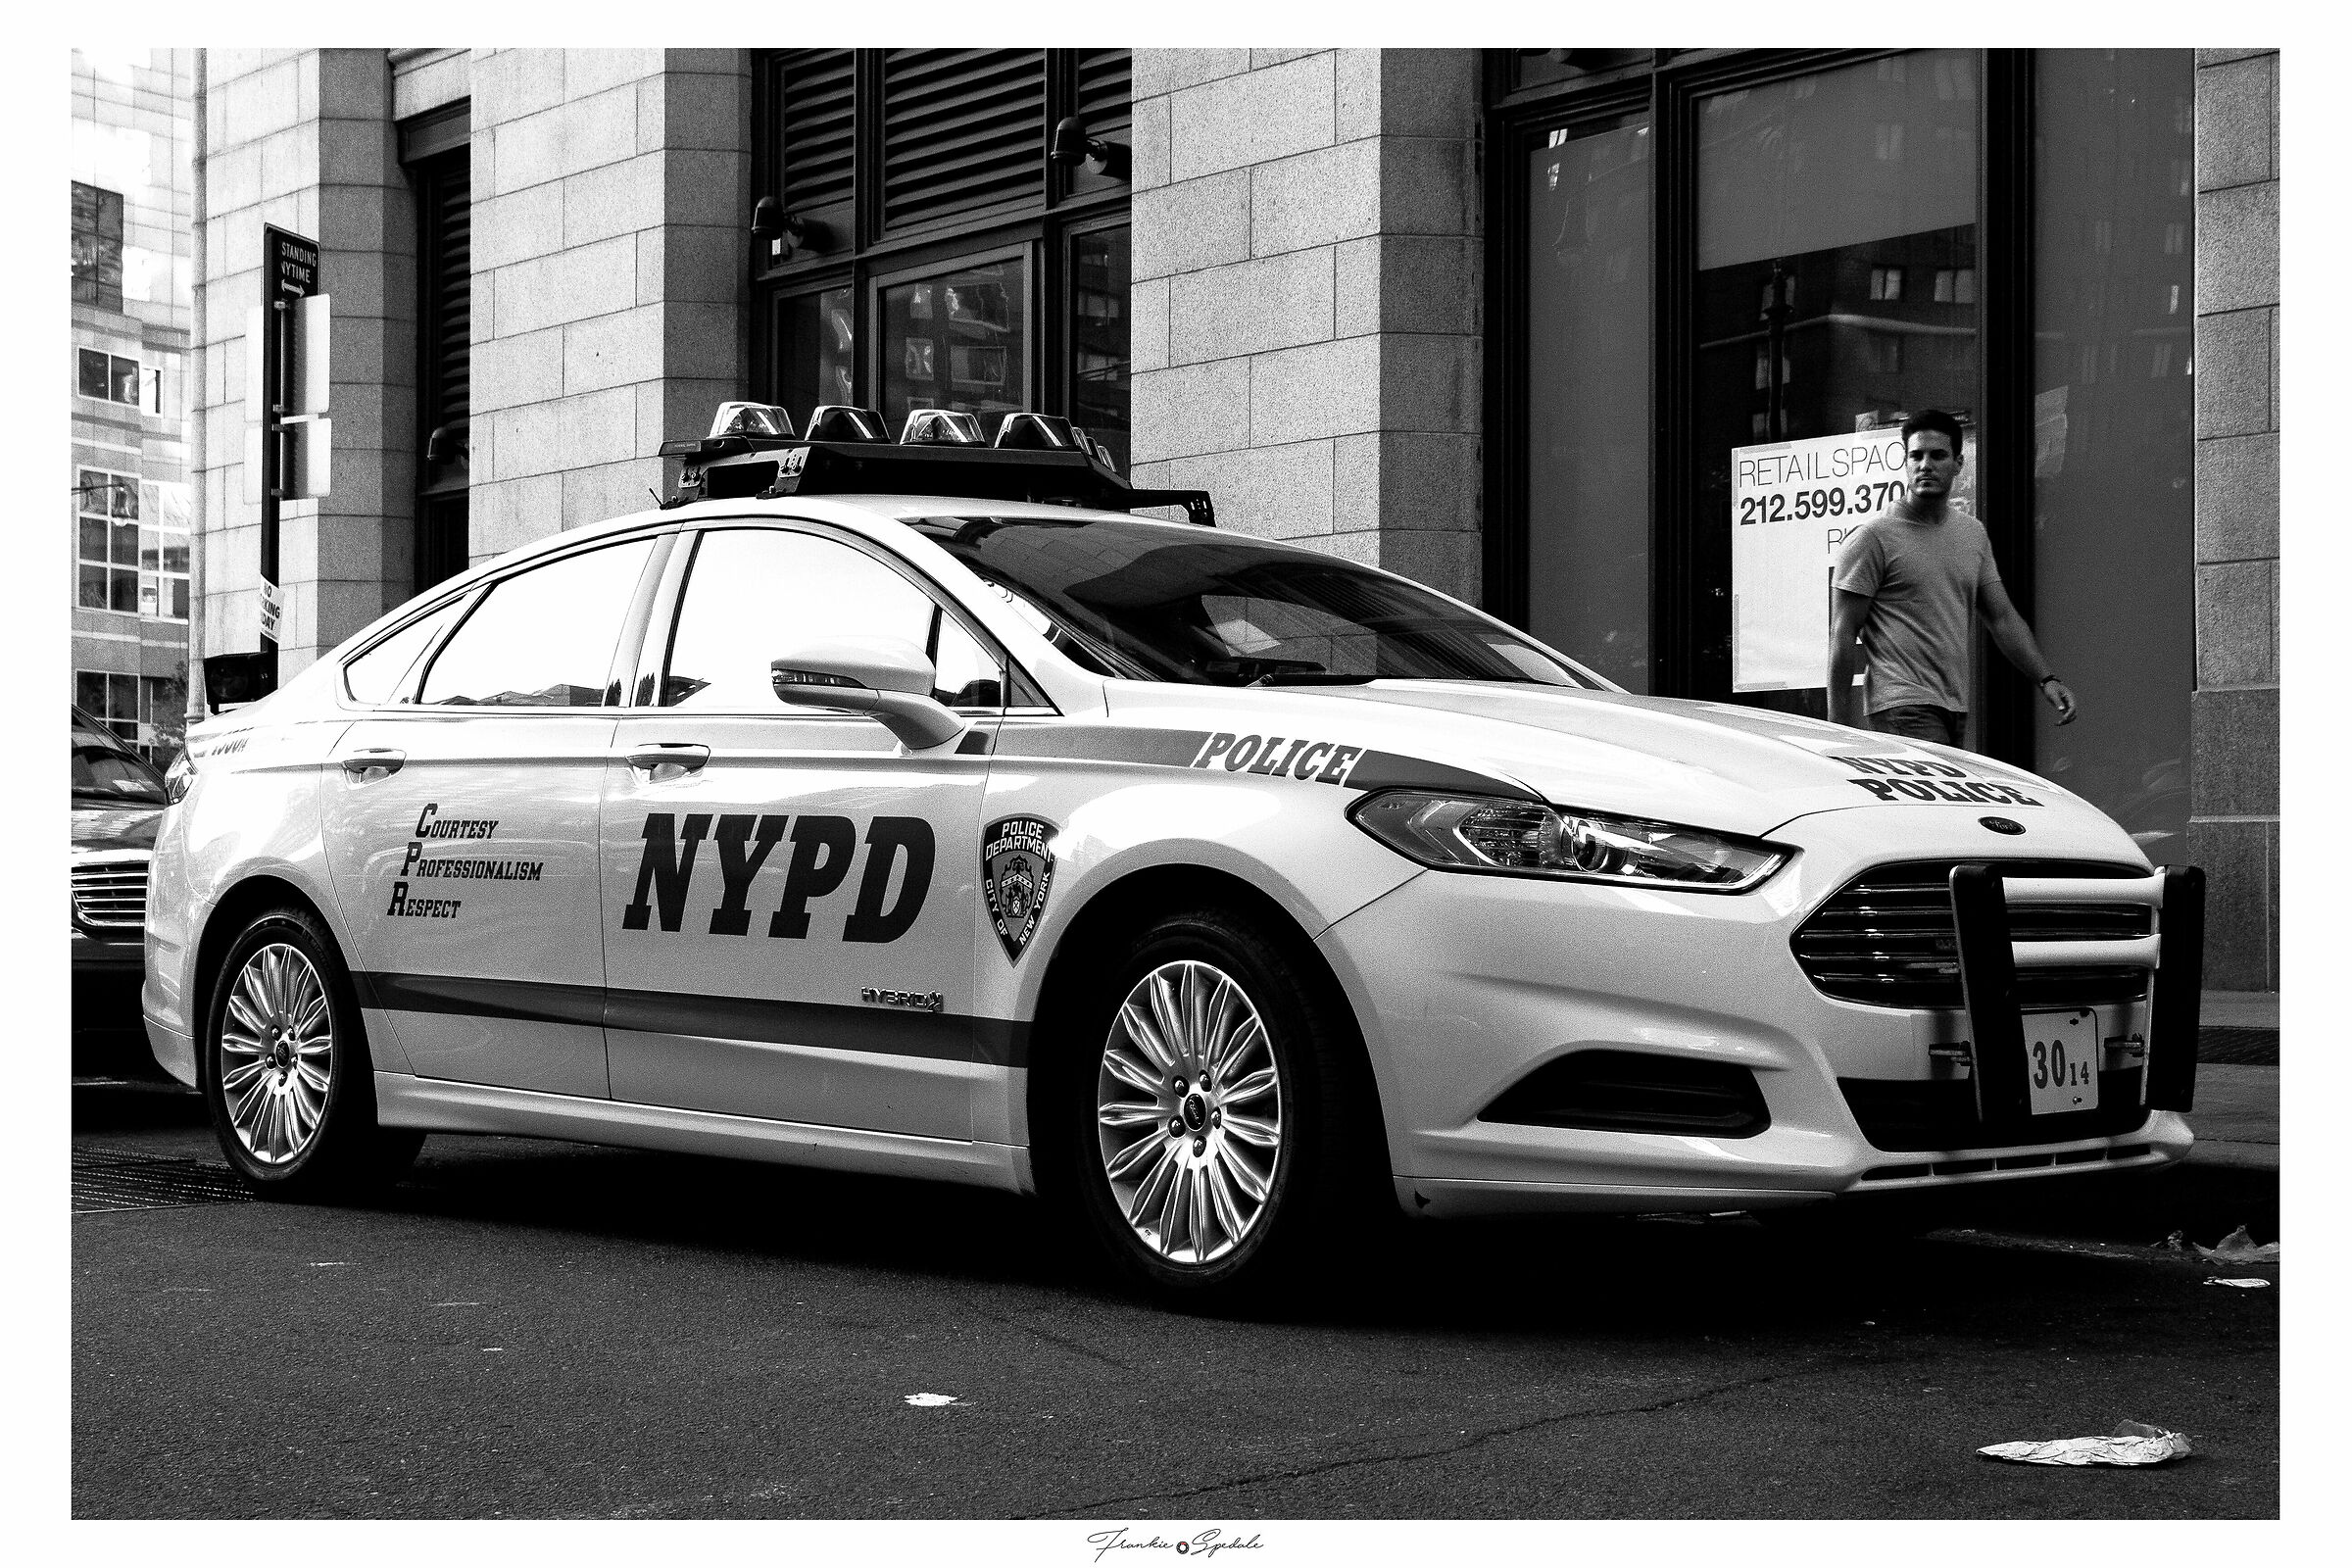 Police car in New York...